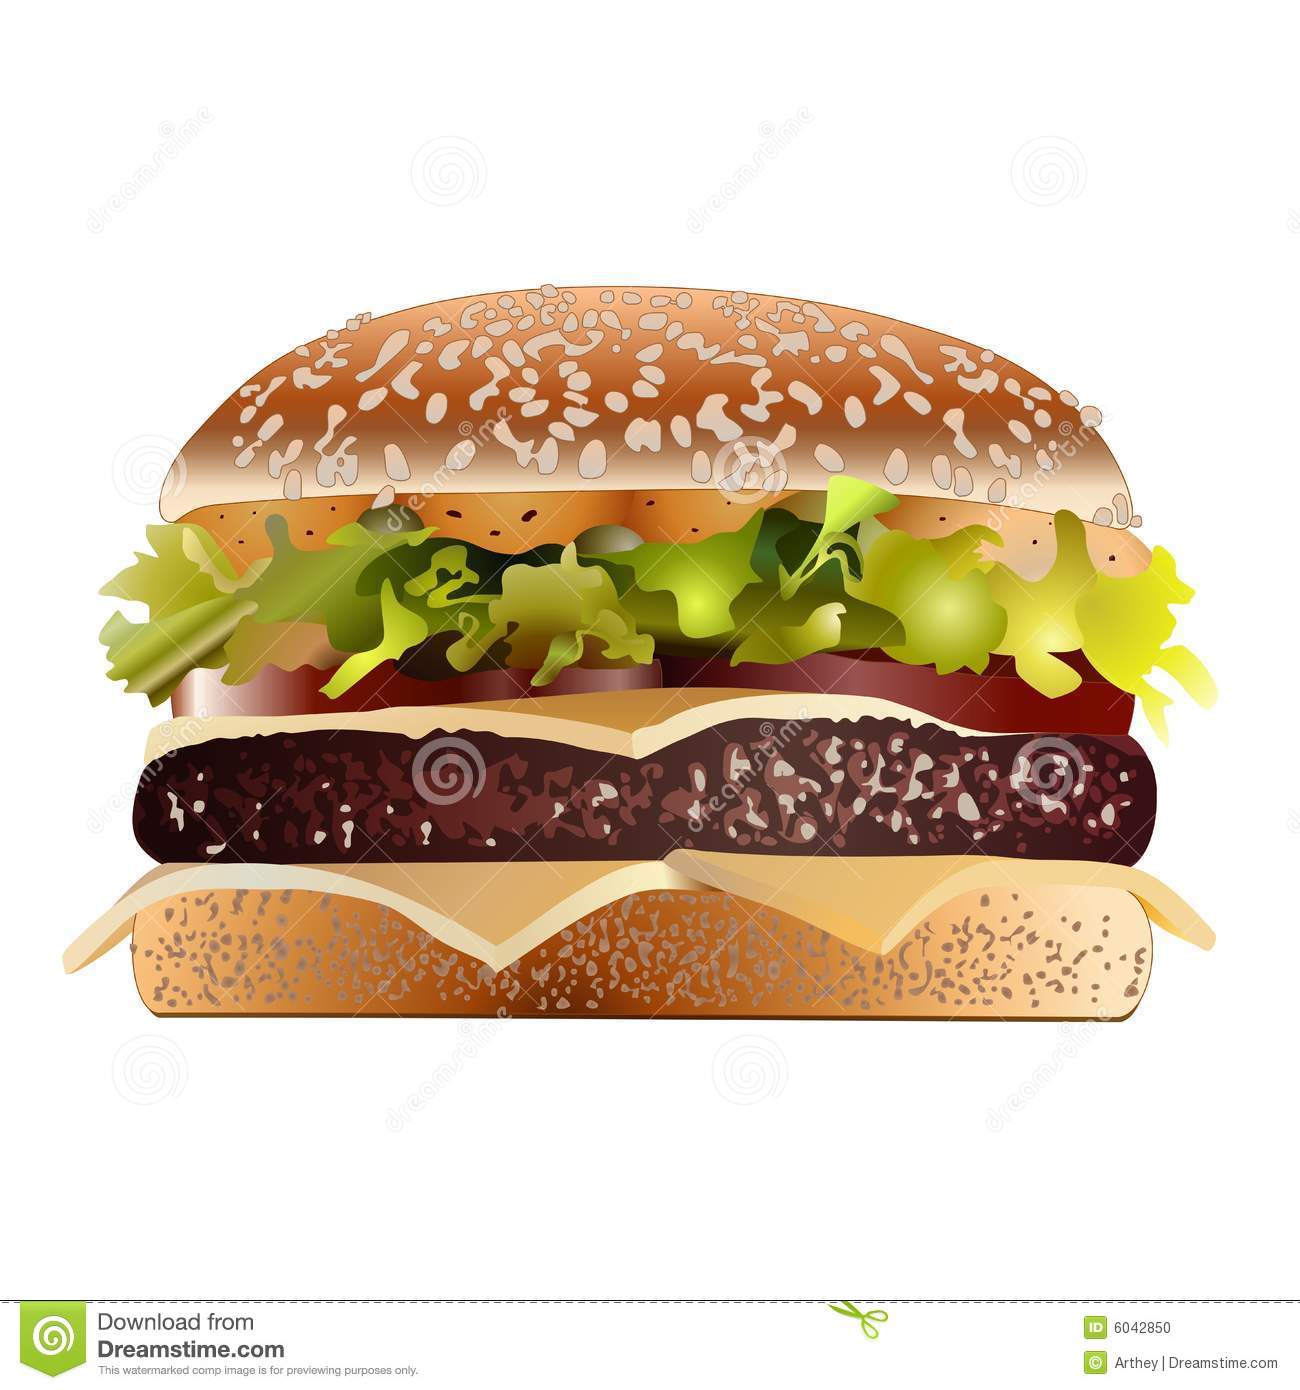 Bacon Cheeseburger Stock Photo   Image  6042850